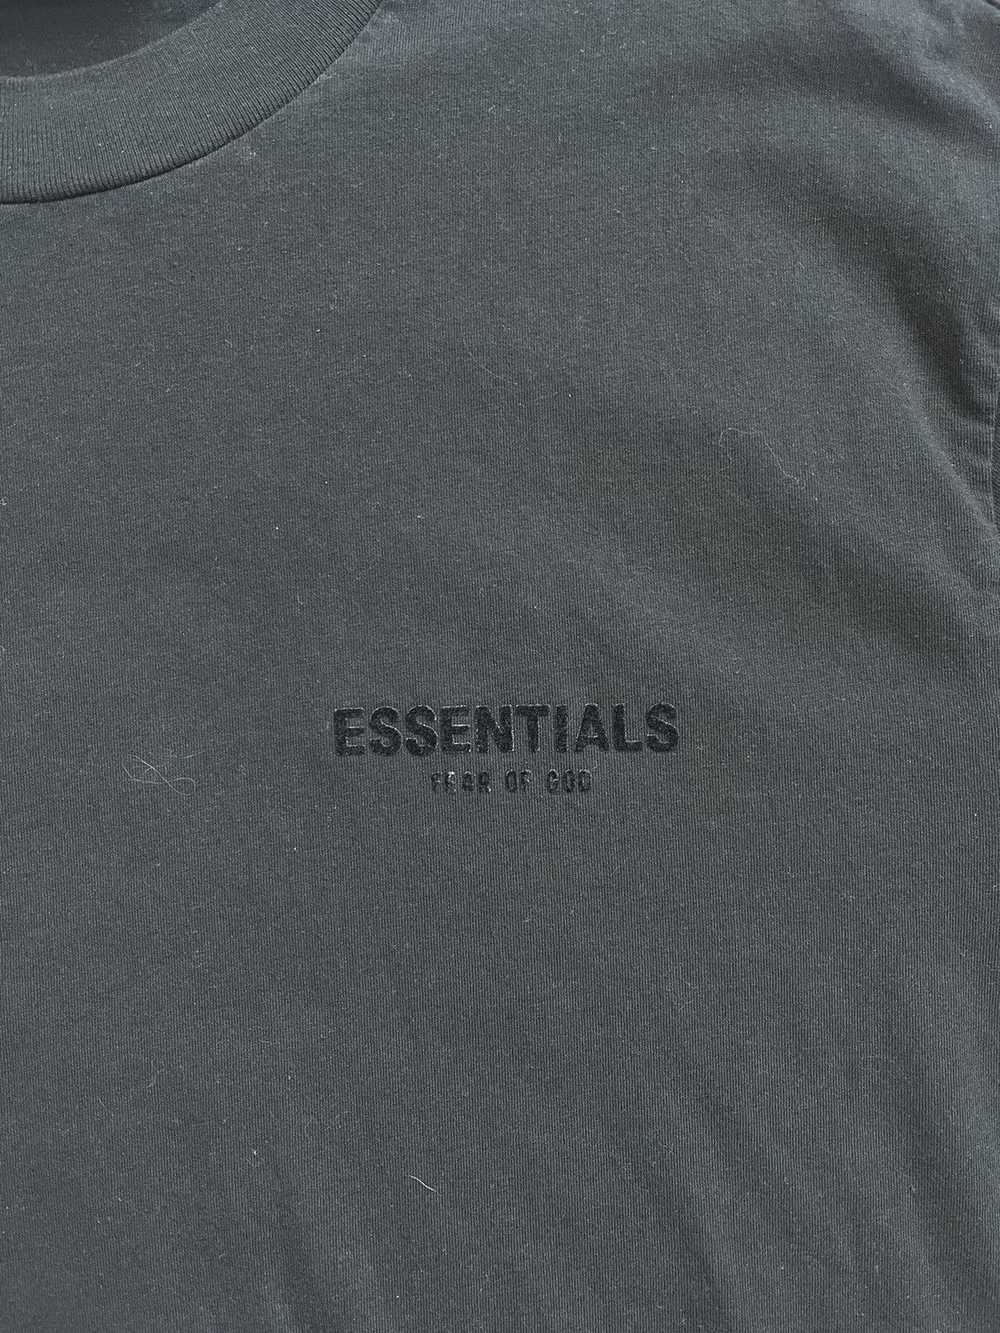 Essentials Essentials Tshirt Size L - image 4